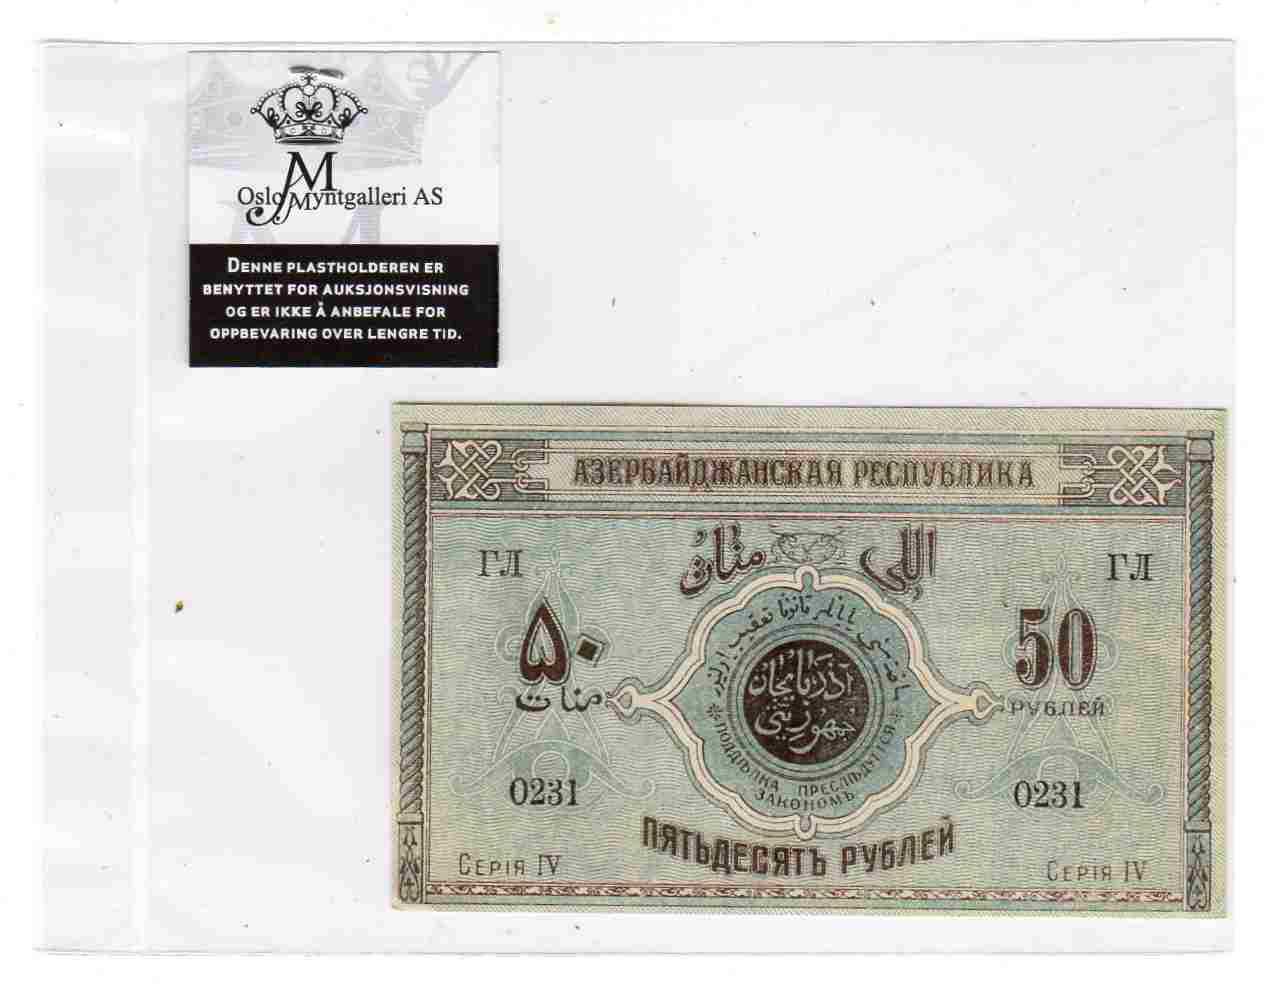 50 rubler 1919 kv0/01 G Thesen